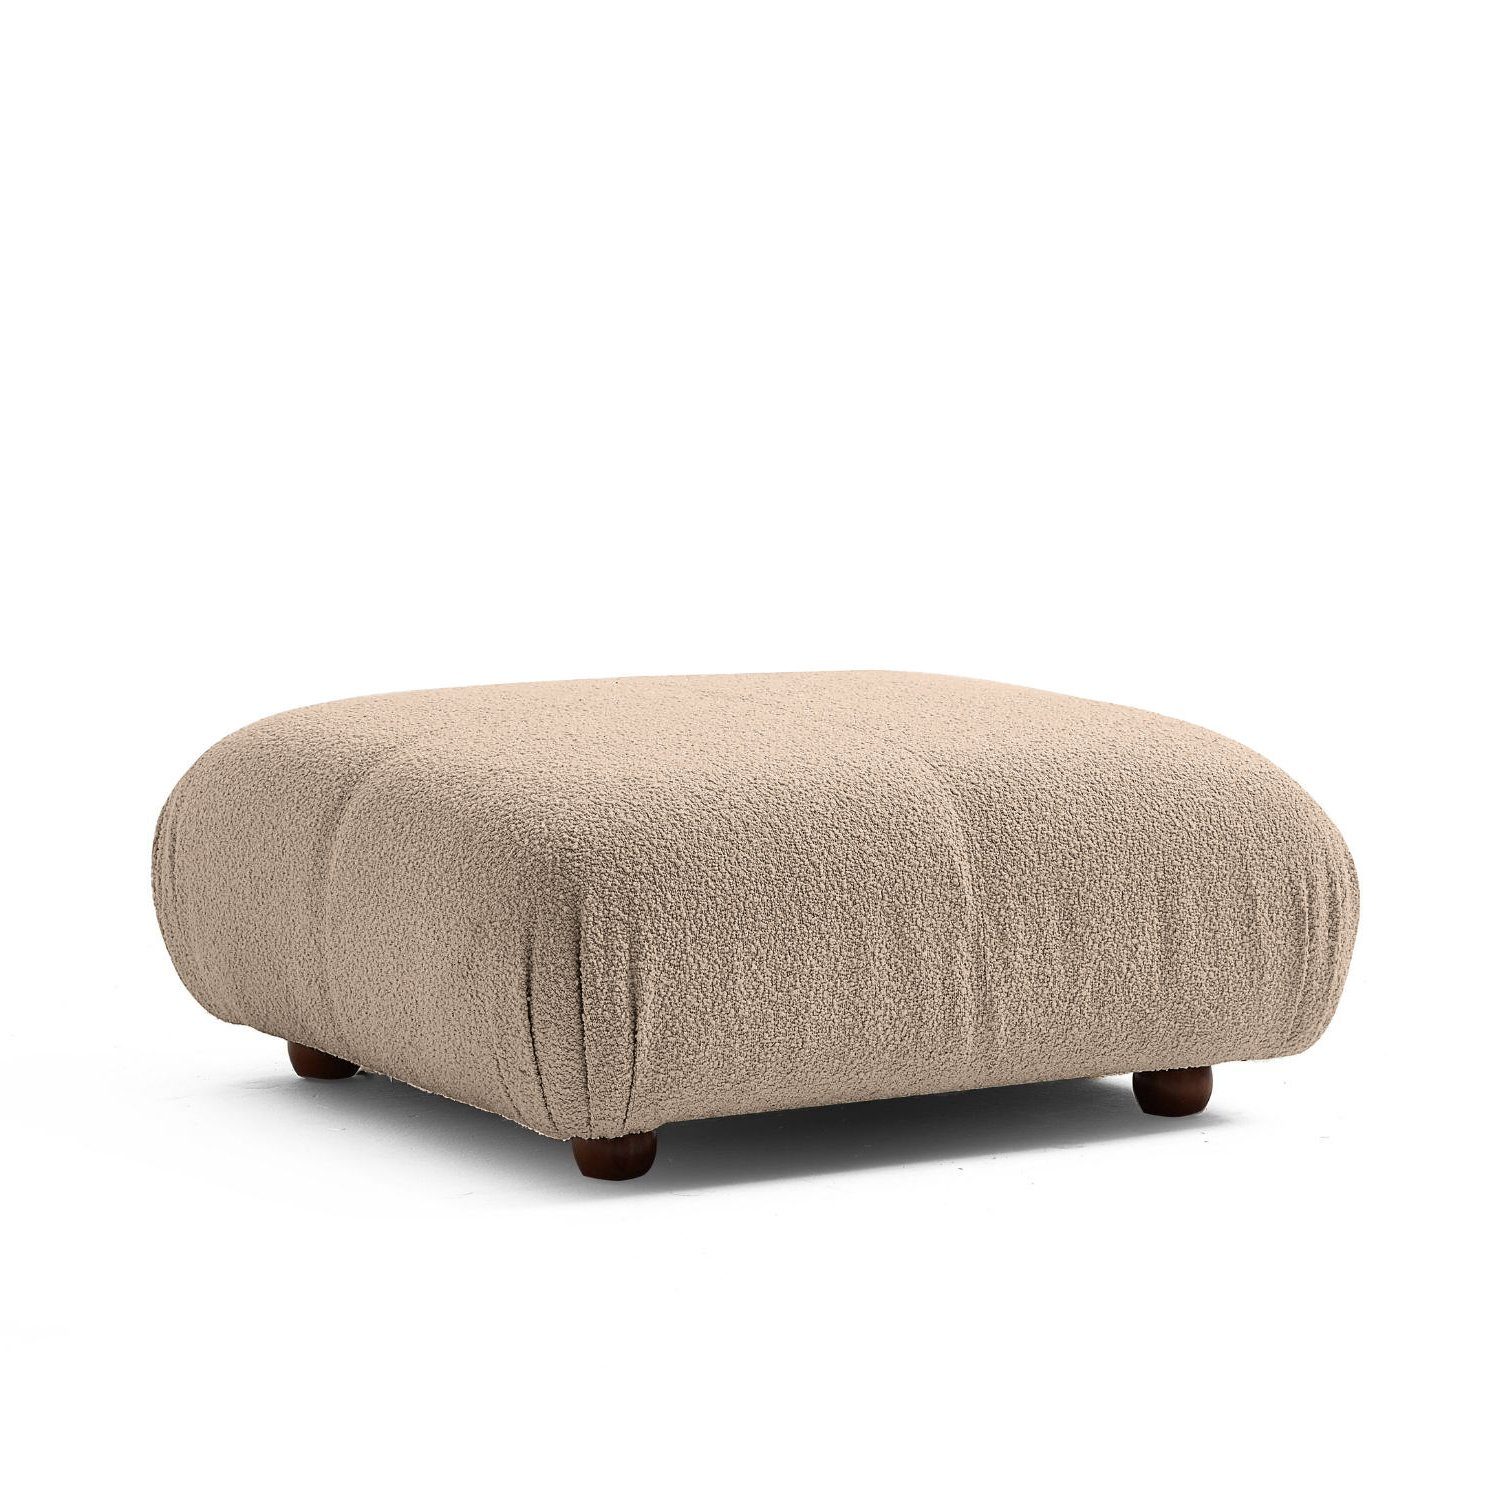 Touch me Sofa Knuffiges Sitzmöbel neueste Generation aus Komfortschaum Hellgrau-Lieferung und Aufbau im Preis enthalten!